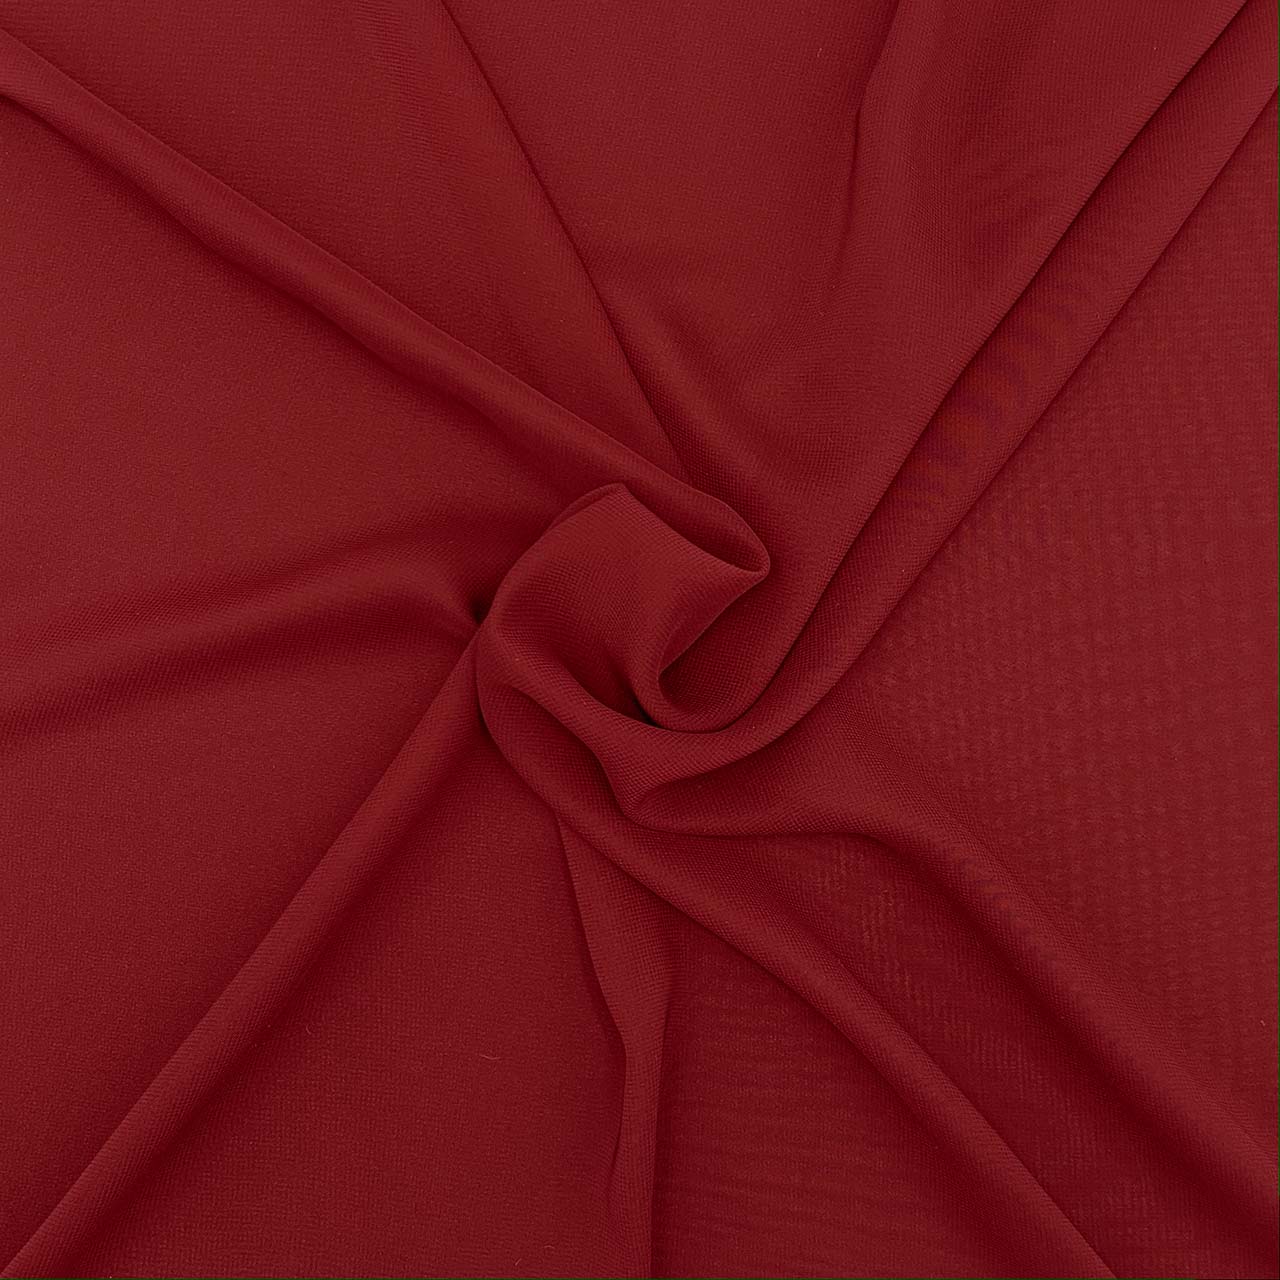 polyester chiffon rubino red fabric